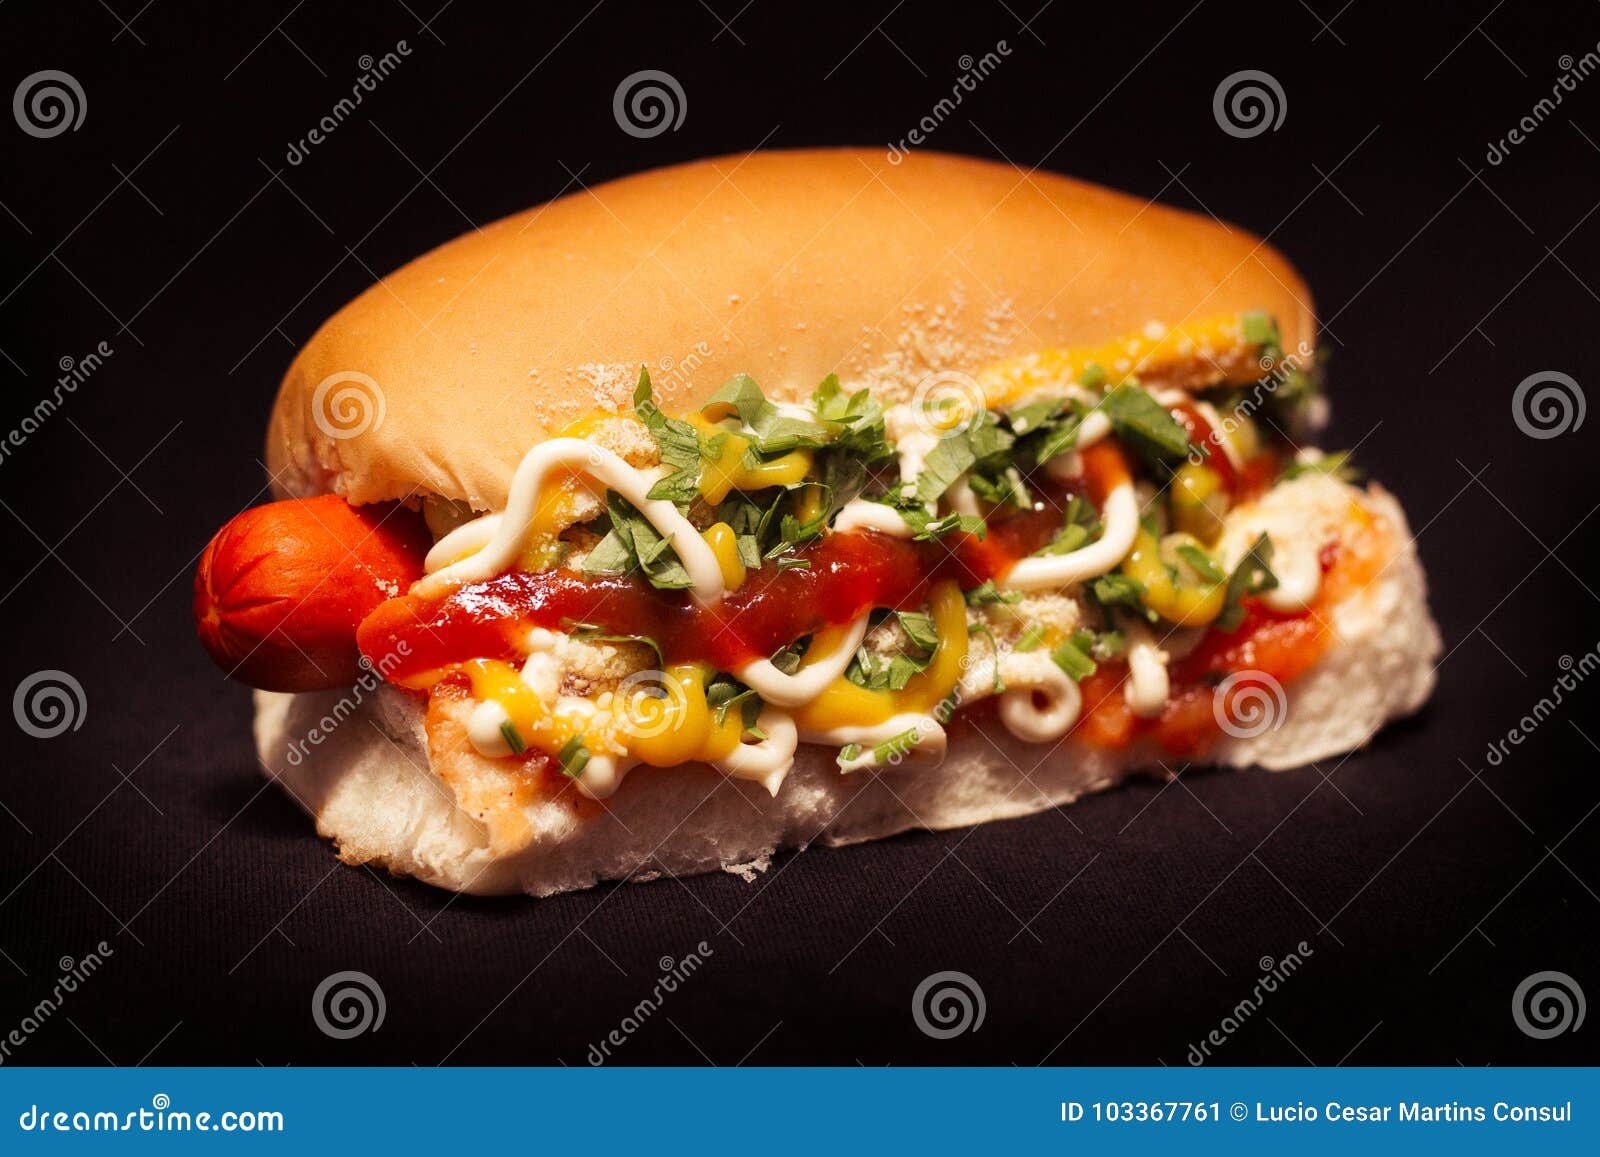 Hot Dog Brasil – tguiando